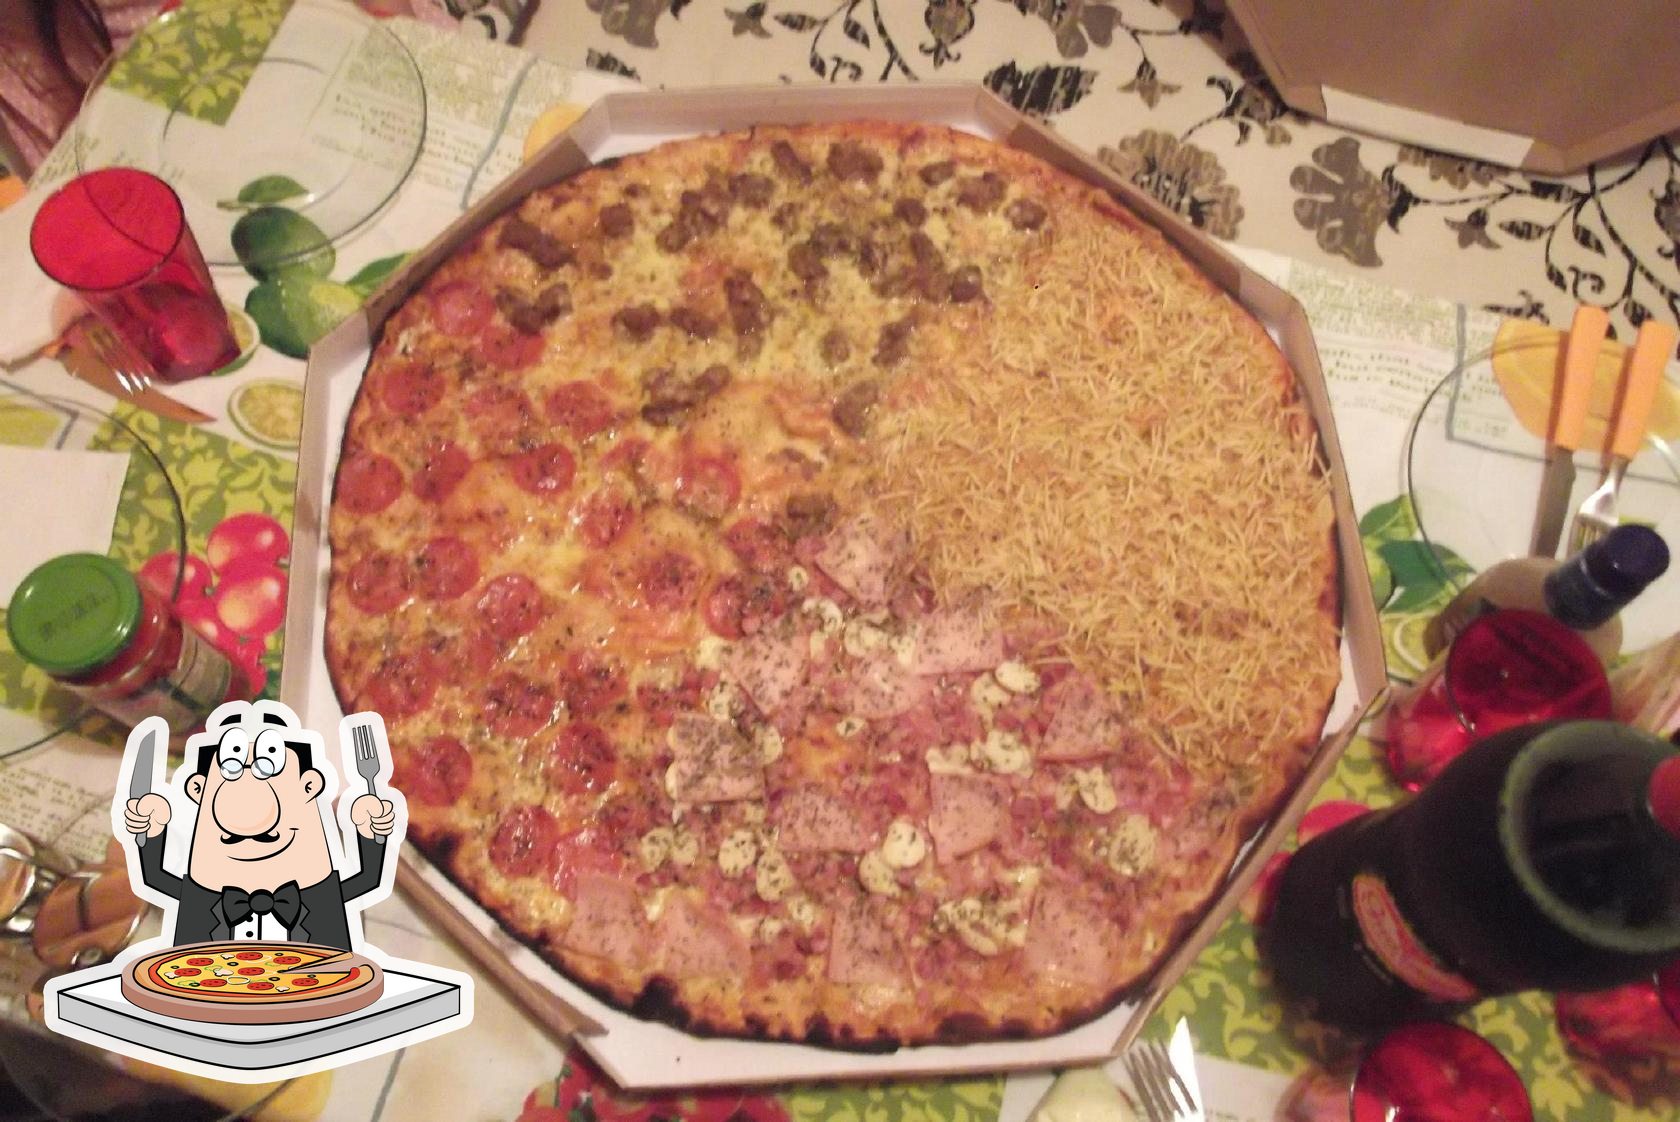 Super Pizza Gigante Itajai